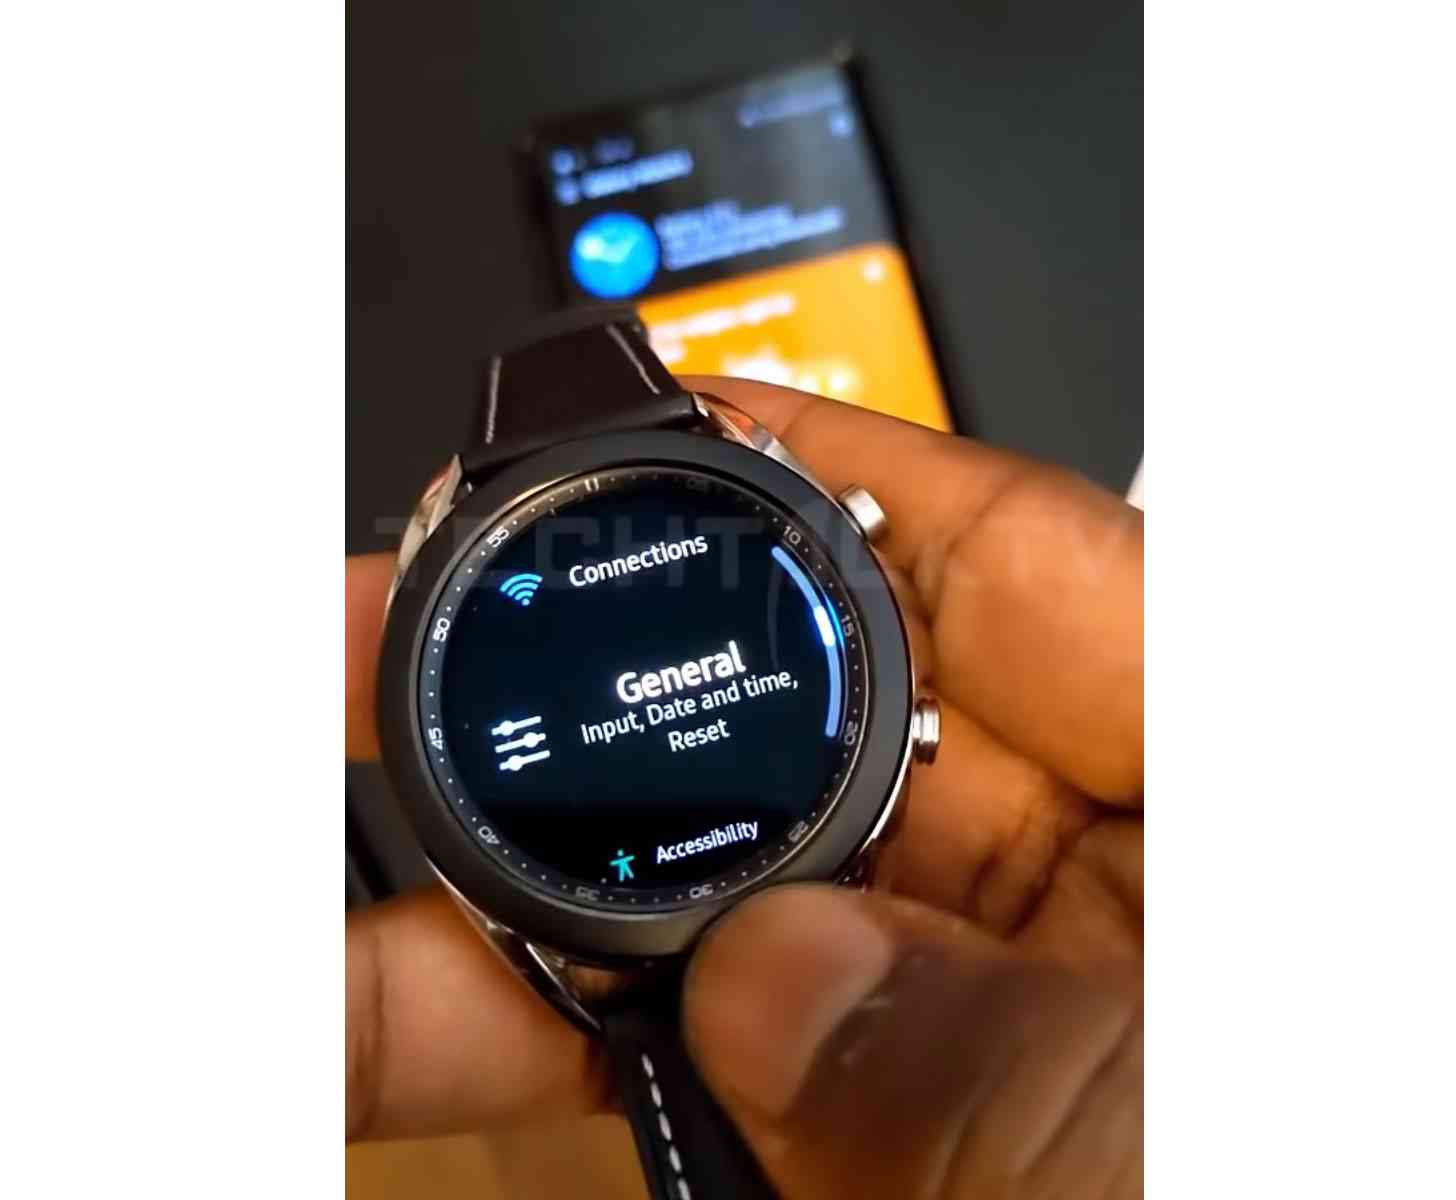 Samsung Galaxy Watch 3 hands-on video